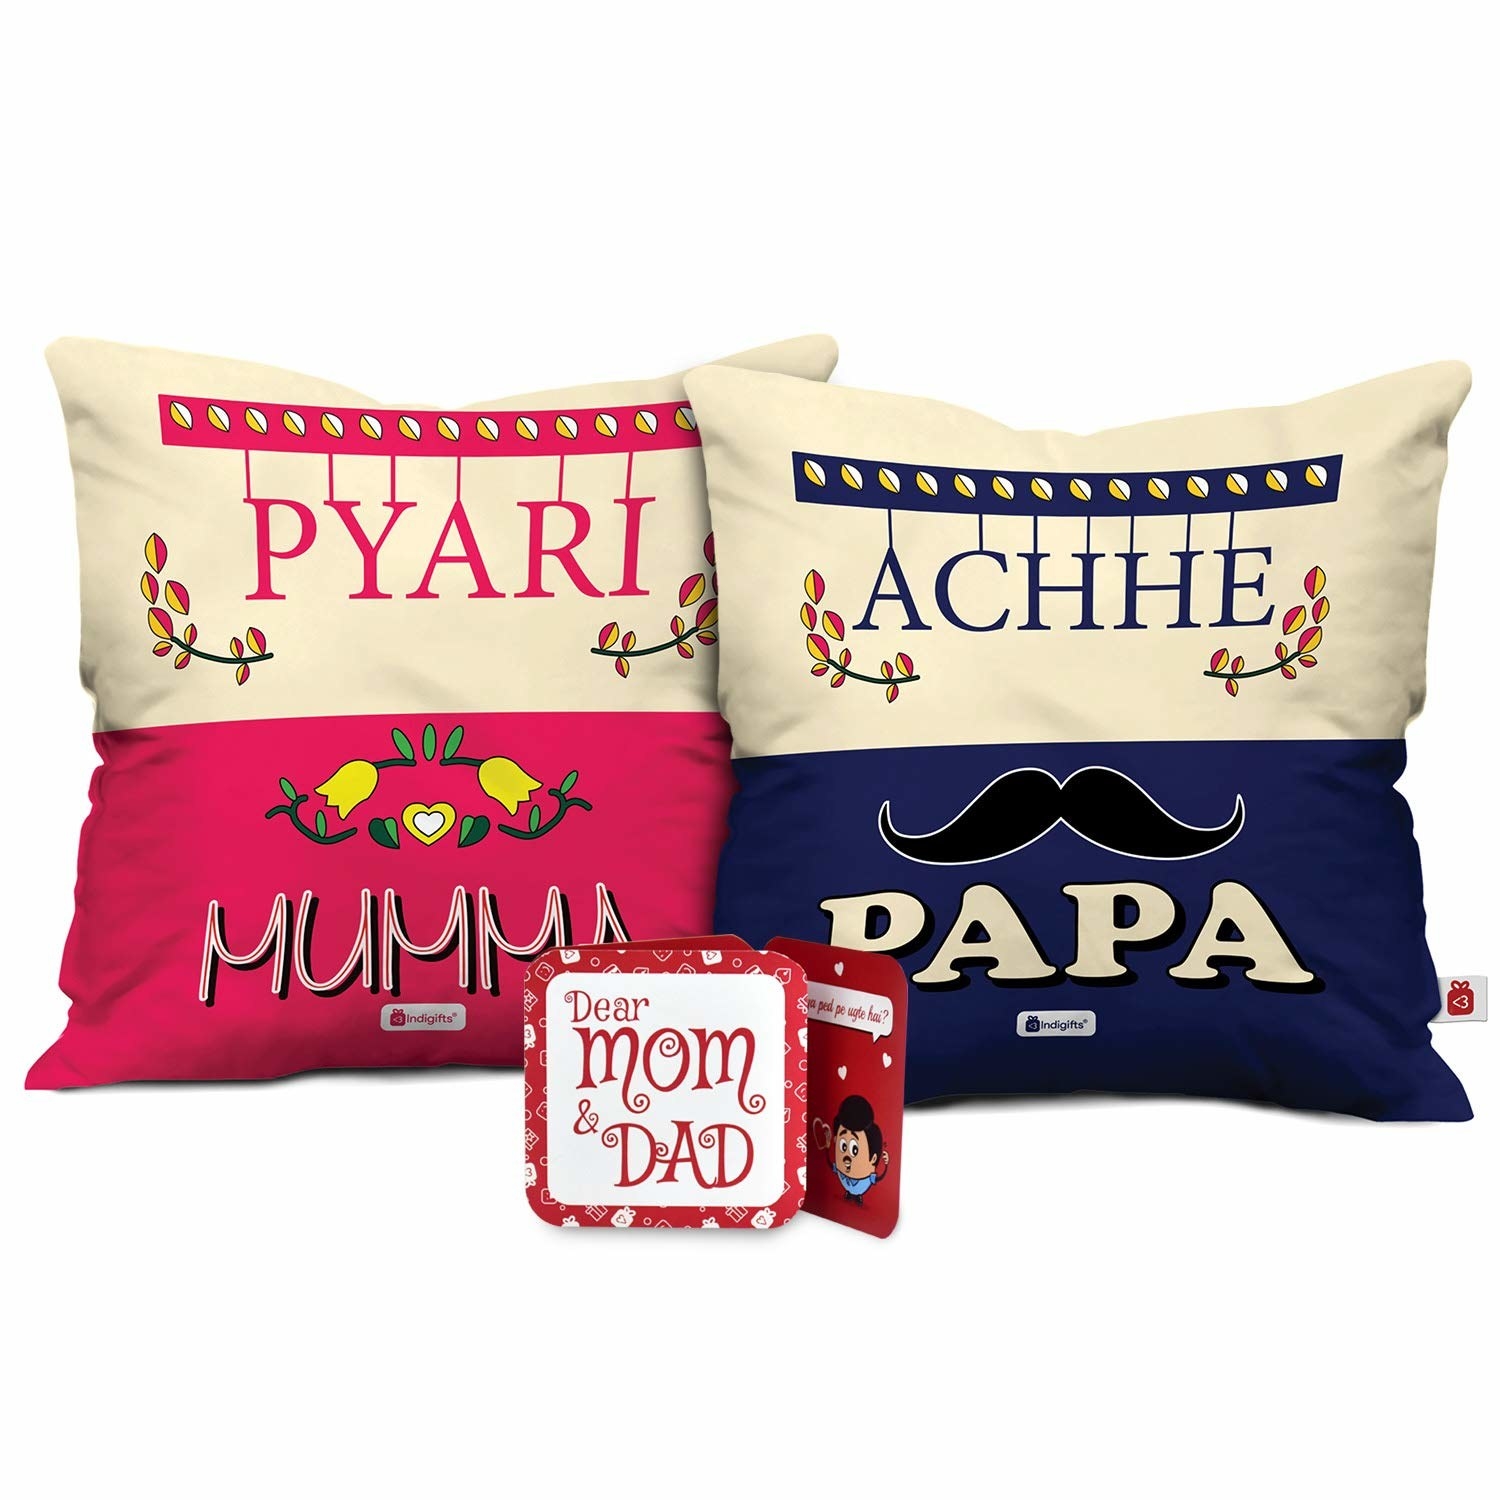 Pink and blue cushions with Pyari Mumma and Achhe Papa written on them